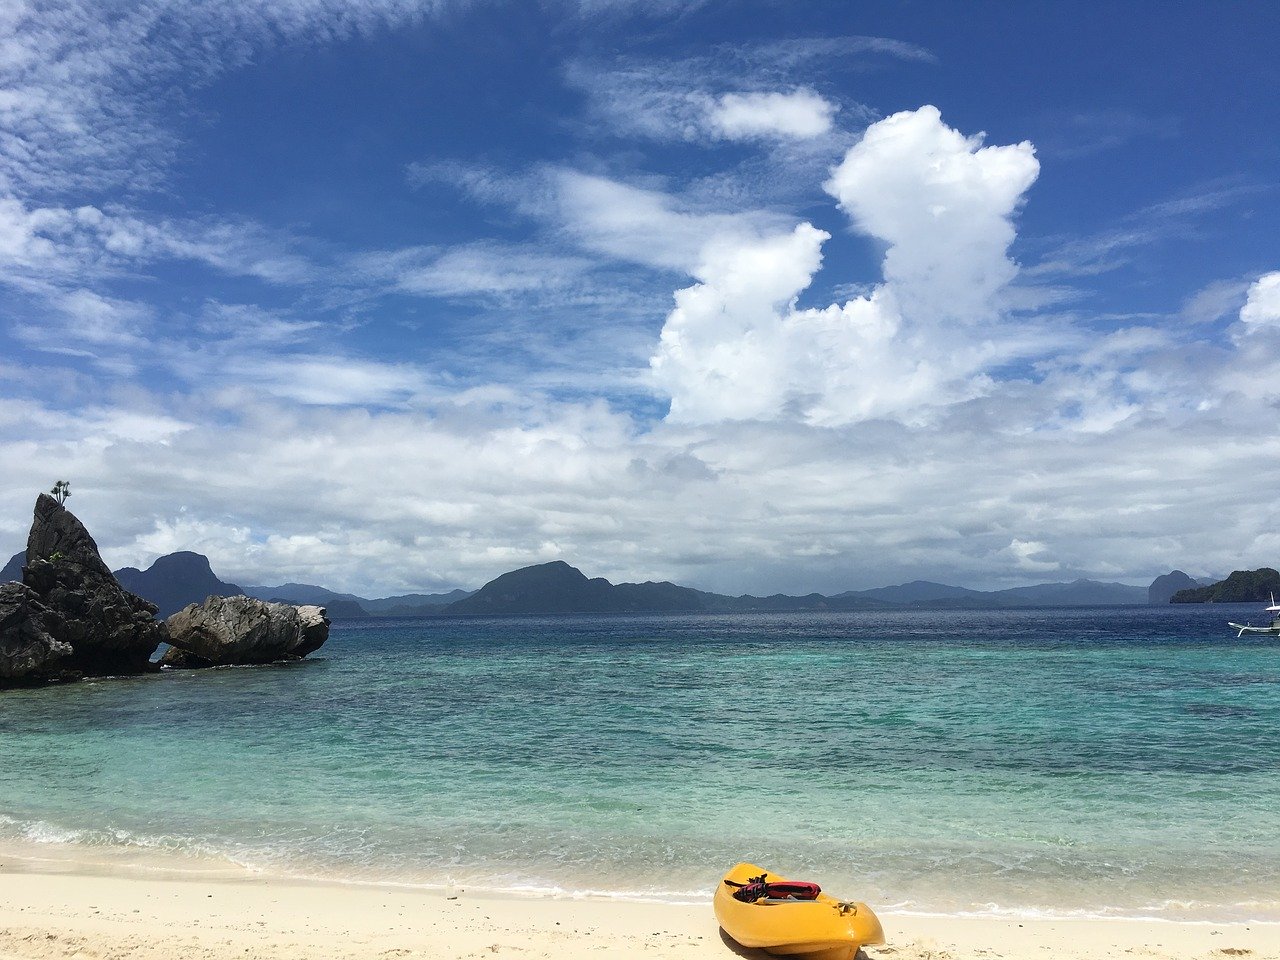 La spiaggia di Palawan, uno dei posti di mare più belli tra tutte le cose da vedere alle Filippine